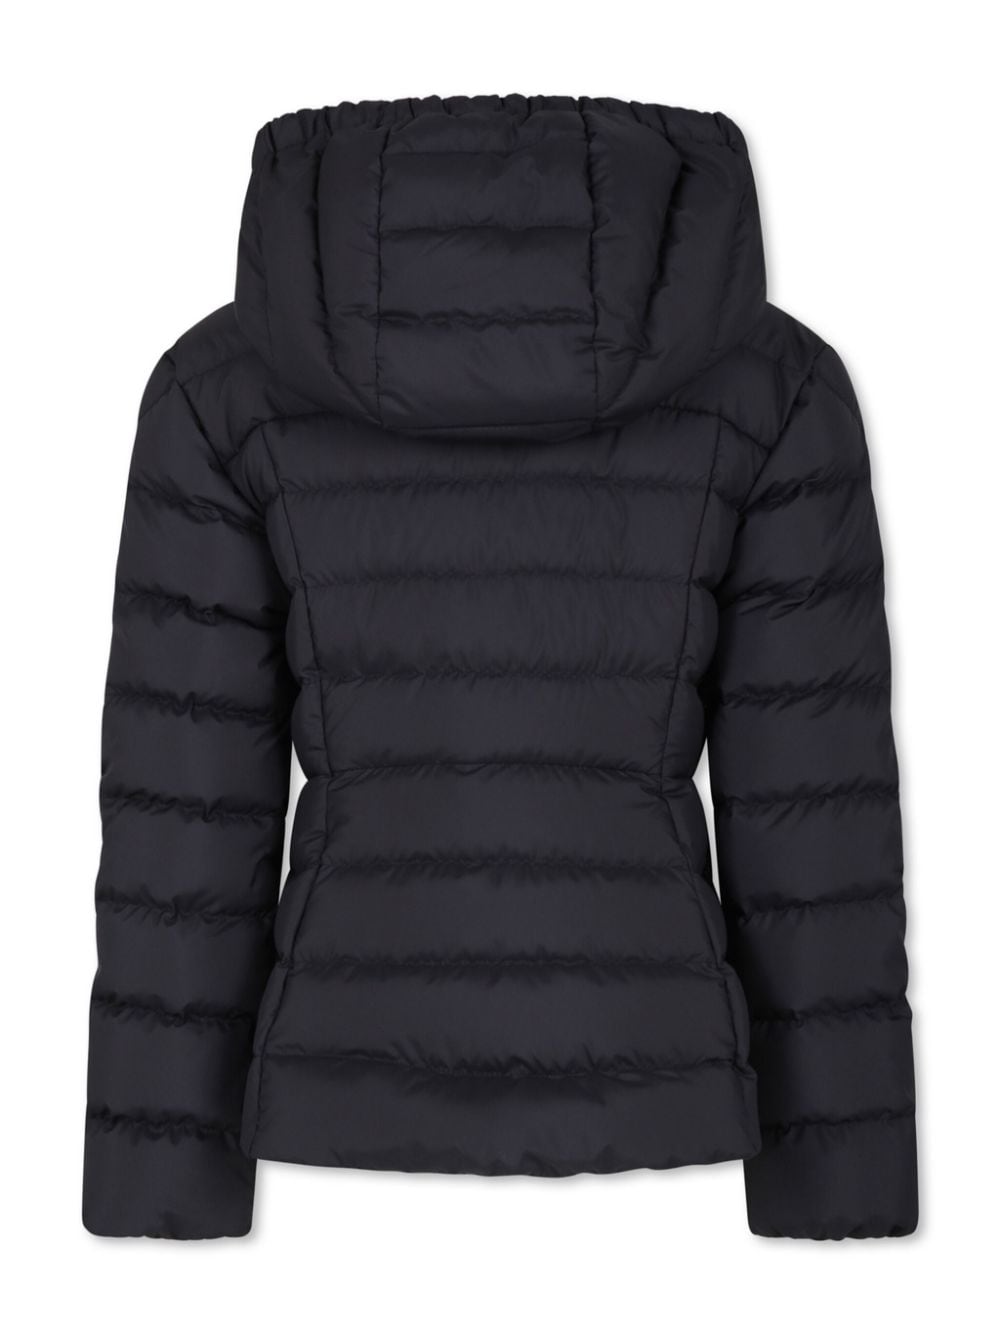 Egisto jacket for girls in black